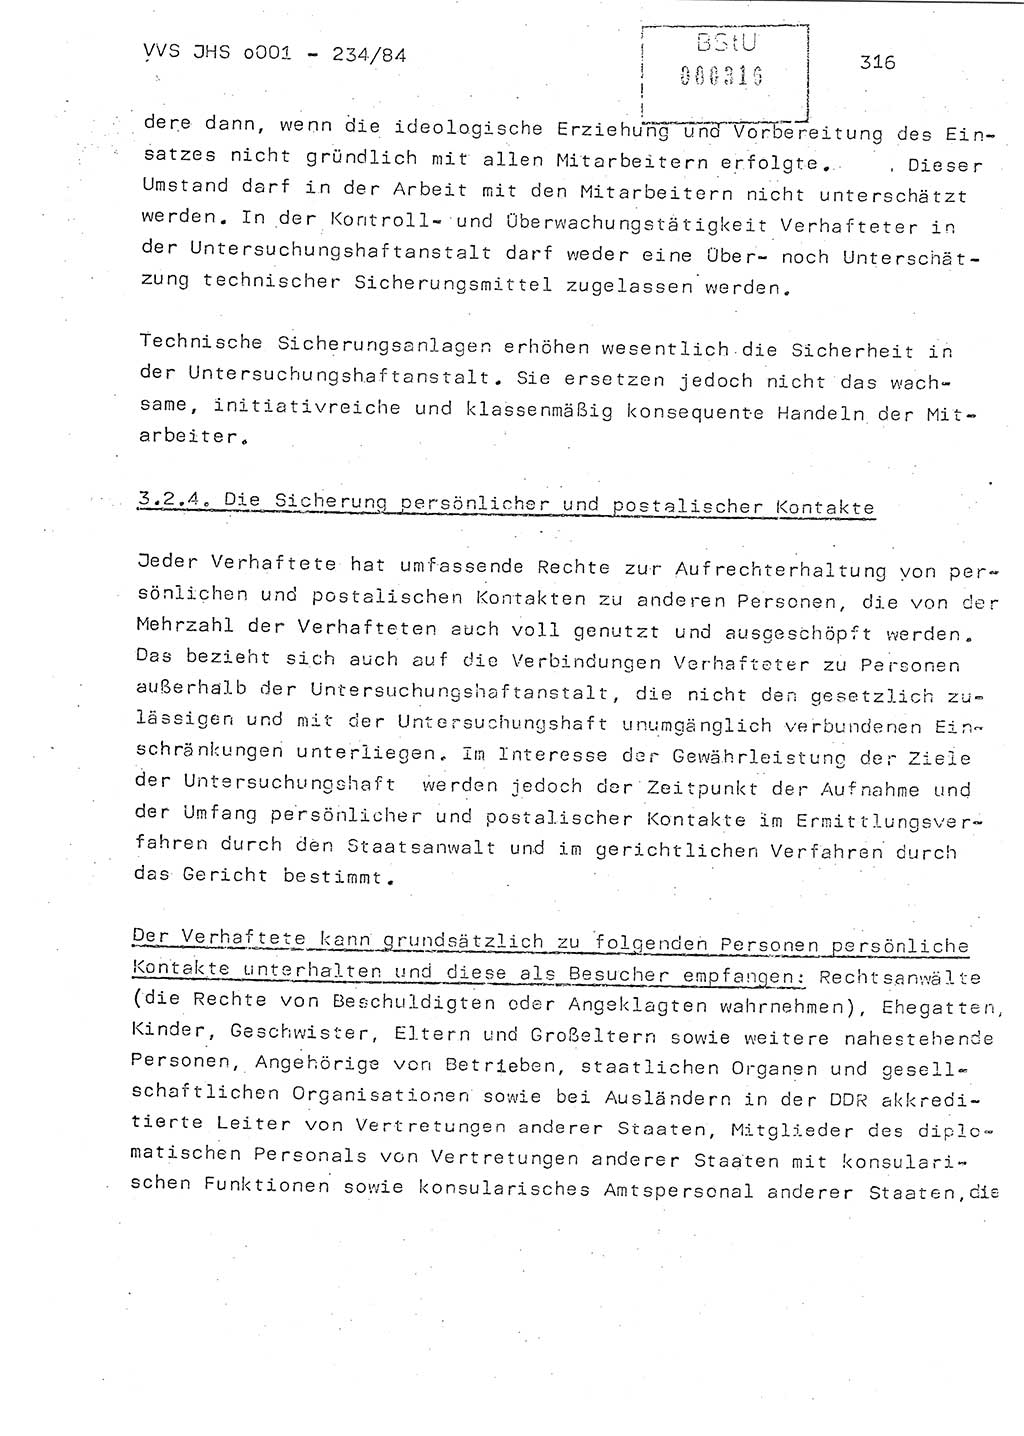 Dissertation Oberst Siegfried Rataizick (Abt. ⅩⅣ), Oberstleutnant Volkmar Heinz (Abt. ⅩⅣ), Oberstleutnant Werner Stein (HA Ⅸ), Hauptmann Heinz Conrad (JHS), Ministerium für Staatssicherheit (MfS) [Deutsche Demokratische Republik (DDR)], Juristische Hochschule (JHS), Vertrauliche Verschlußsache (VVS) o001-234/84, Potsdam 1984, Seite 316 (Diss. MfS DDR JHS VVS o001-234/84 1984, S. 316)